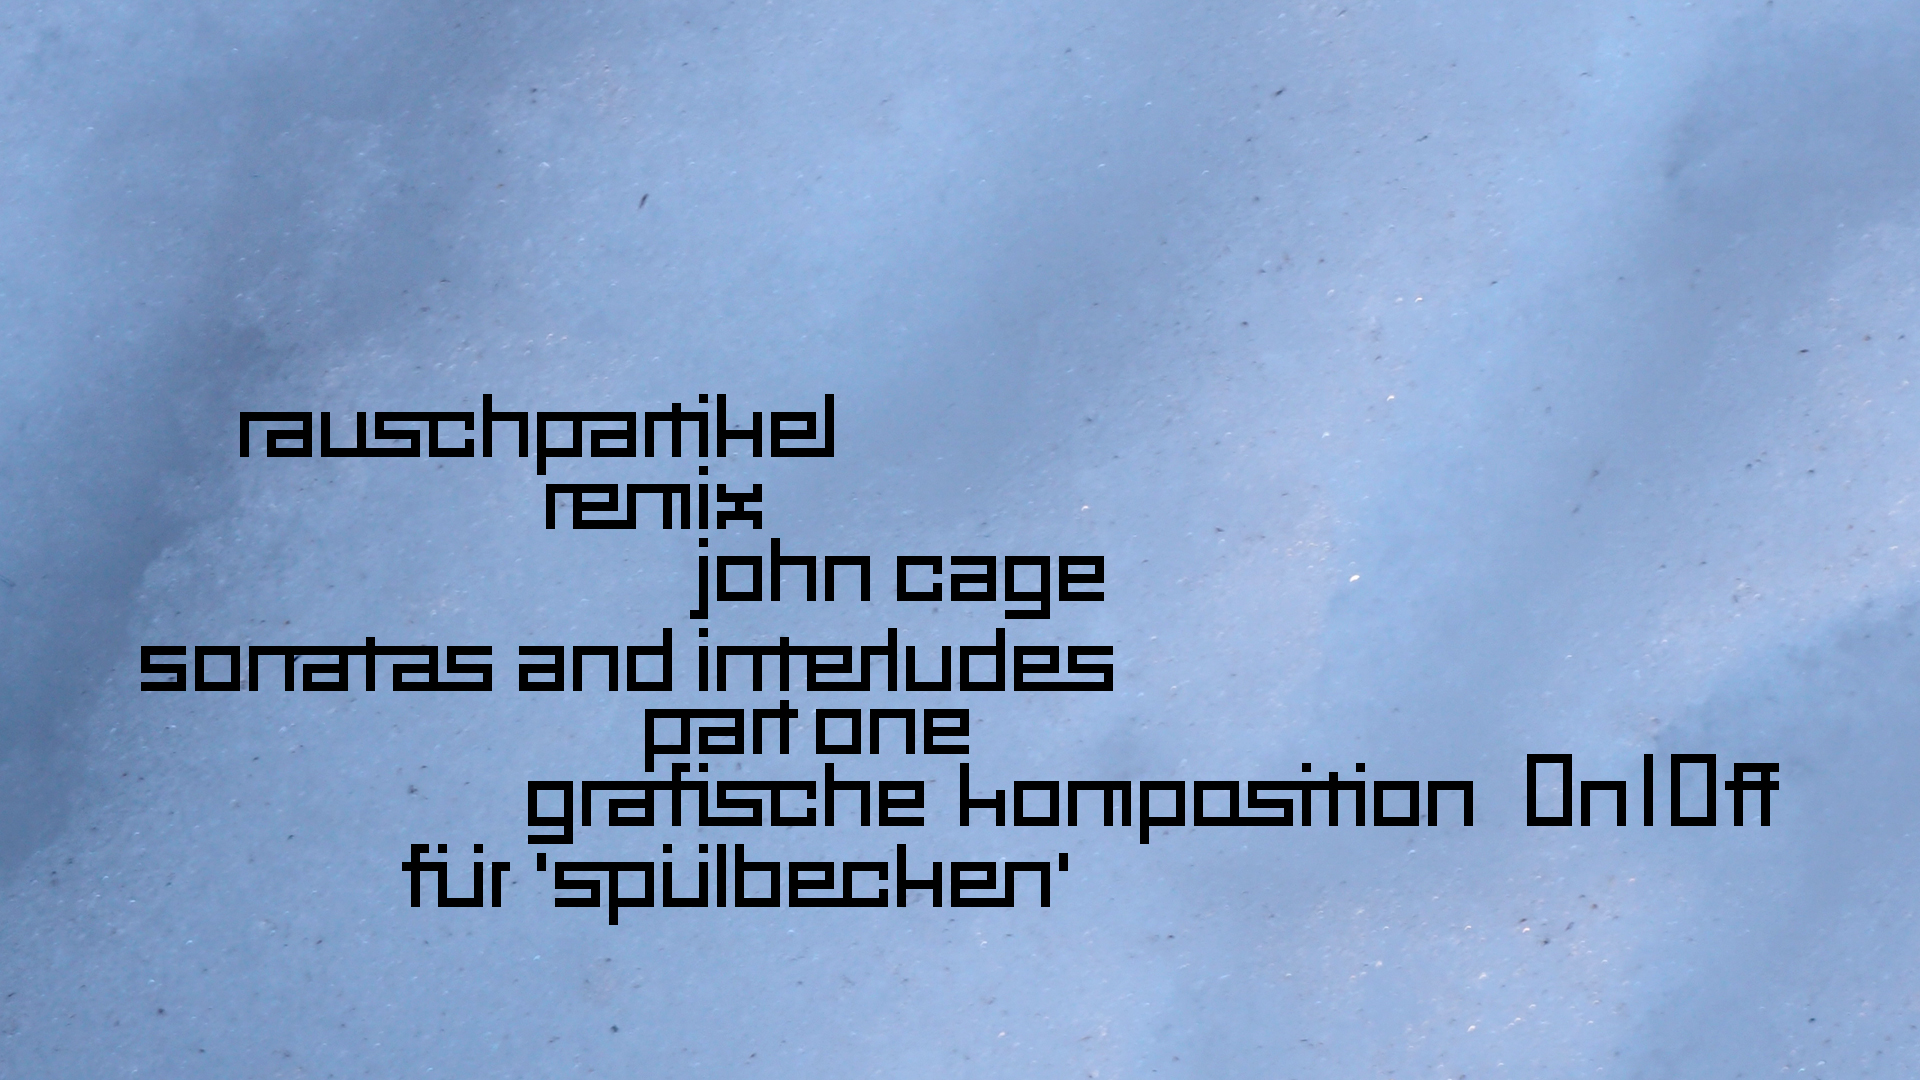 2021-01-30 Wasser in der Sple II (Remix John Cage 'Sonatas & Interludes', On-Off) (Komposition, Remix, Recording, Foto)